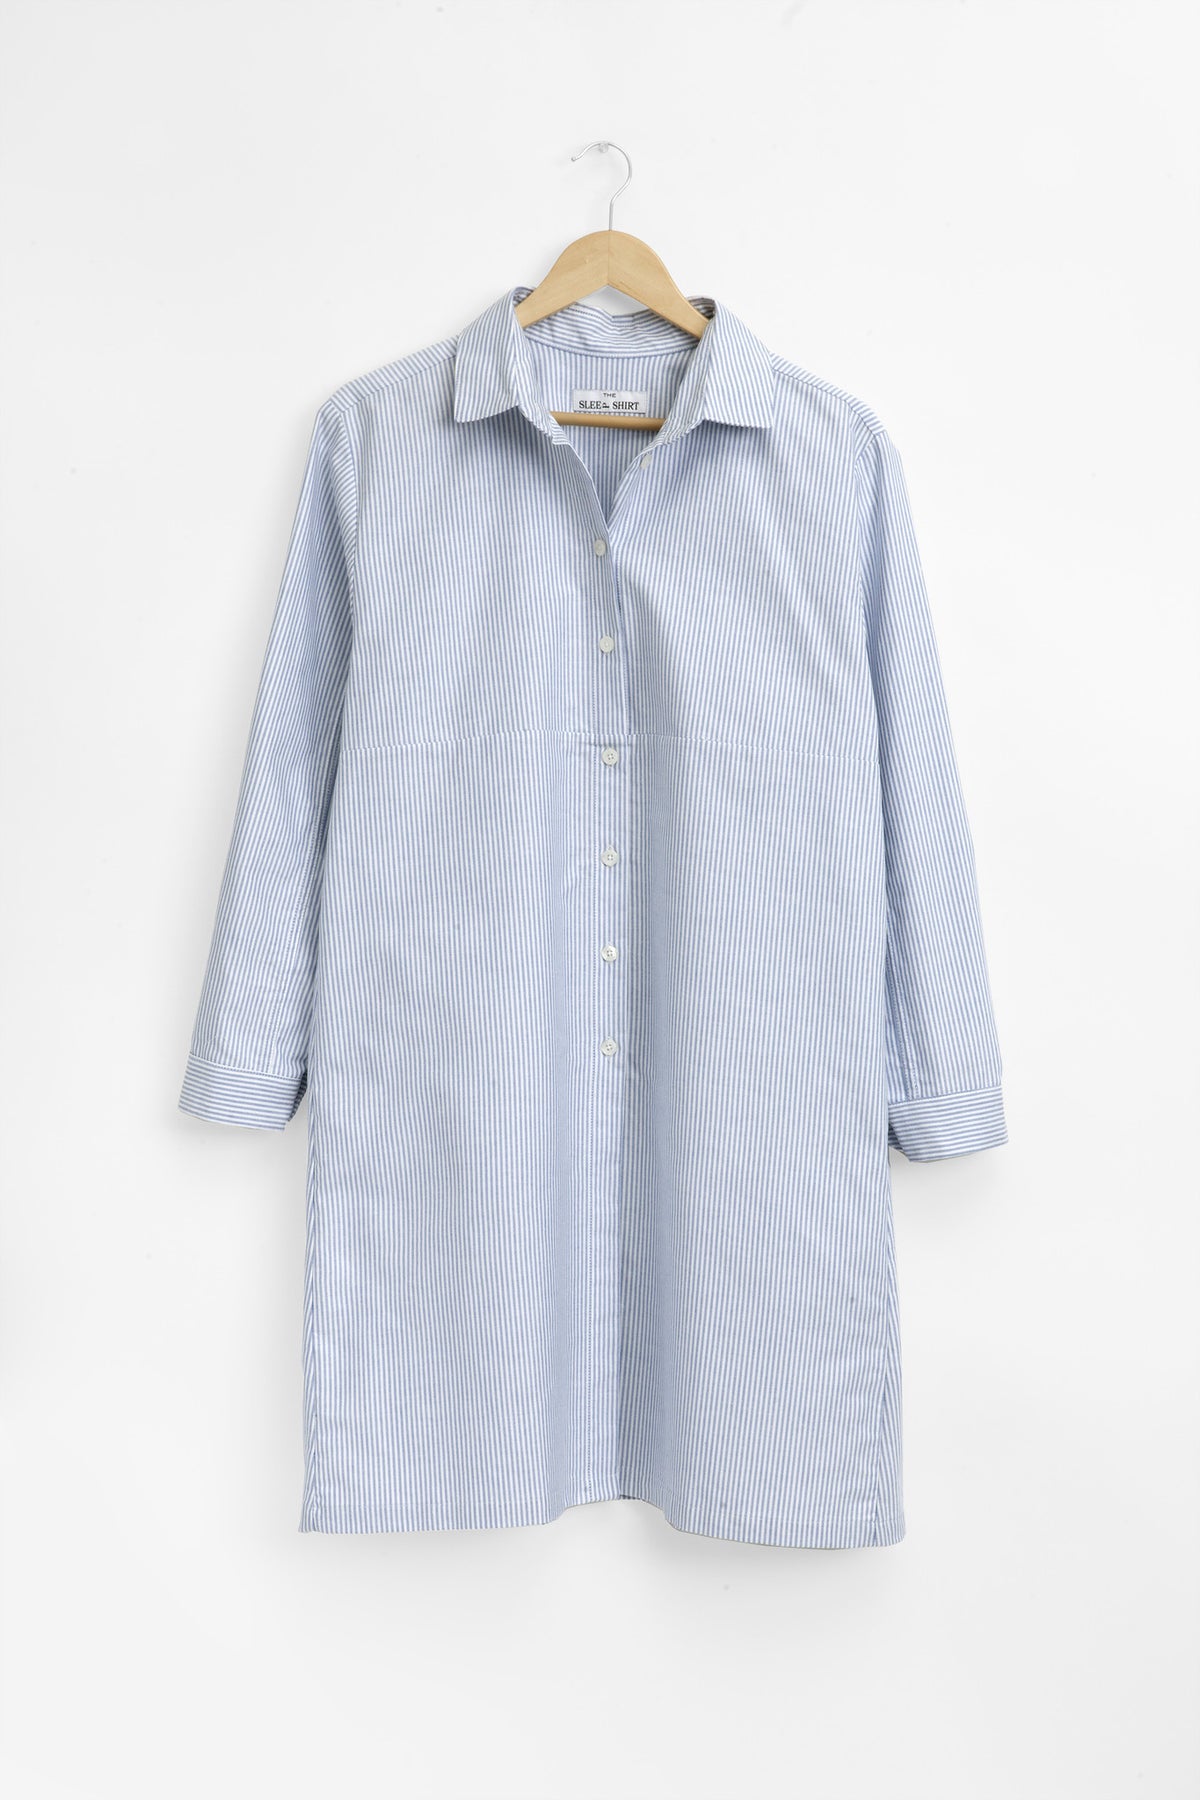 Button Down Sleep Shirt Blue Oxford Stripe | The Sleep Shirt